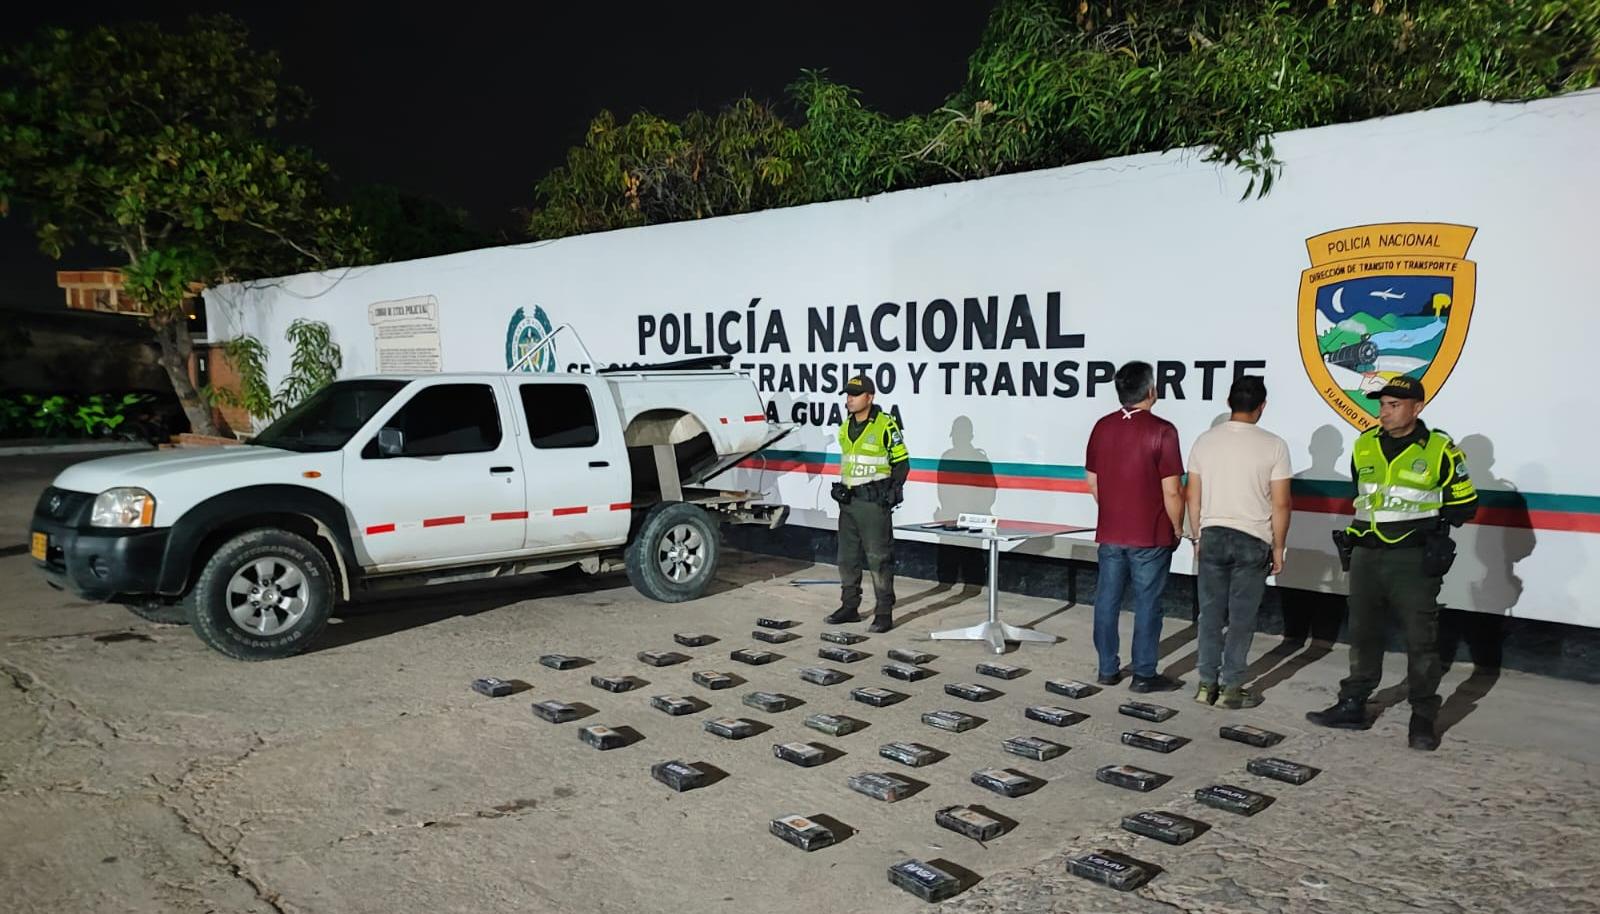 Diego Betancourt y José David Rey Barrios, capturados cuando cubría la ruta Santa Marta – Maicao.